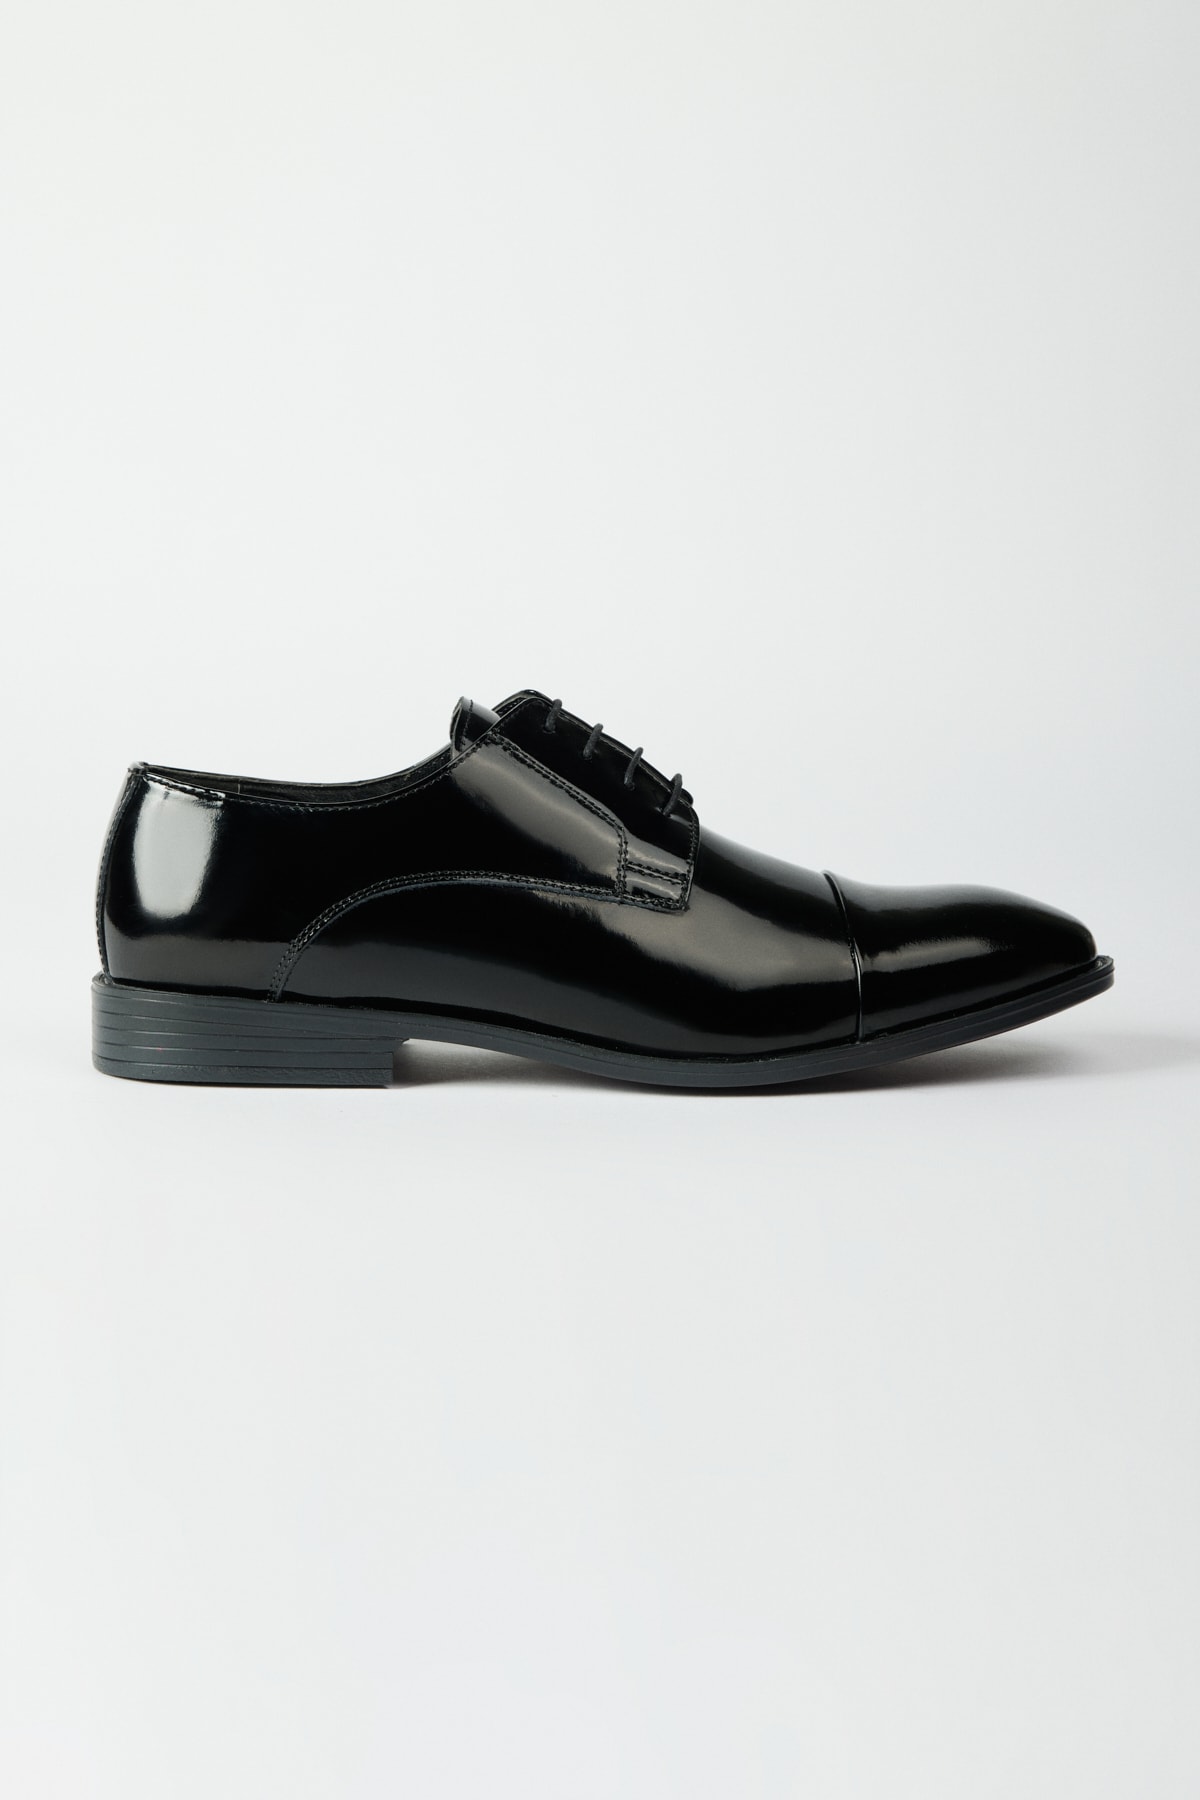 ALTINYILDIZ CLASSICS Men's Black 100% Leather Classic Patent Leather Shoes.